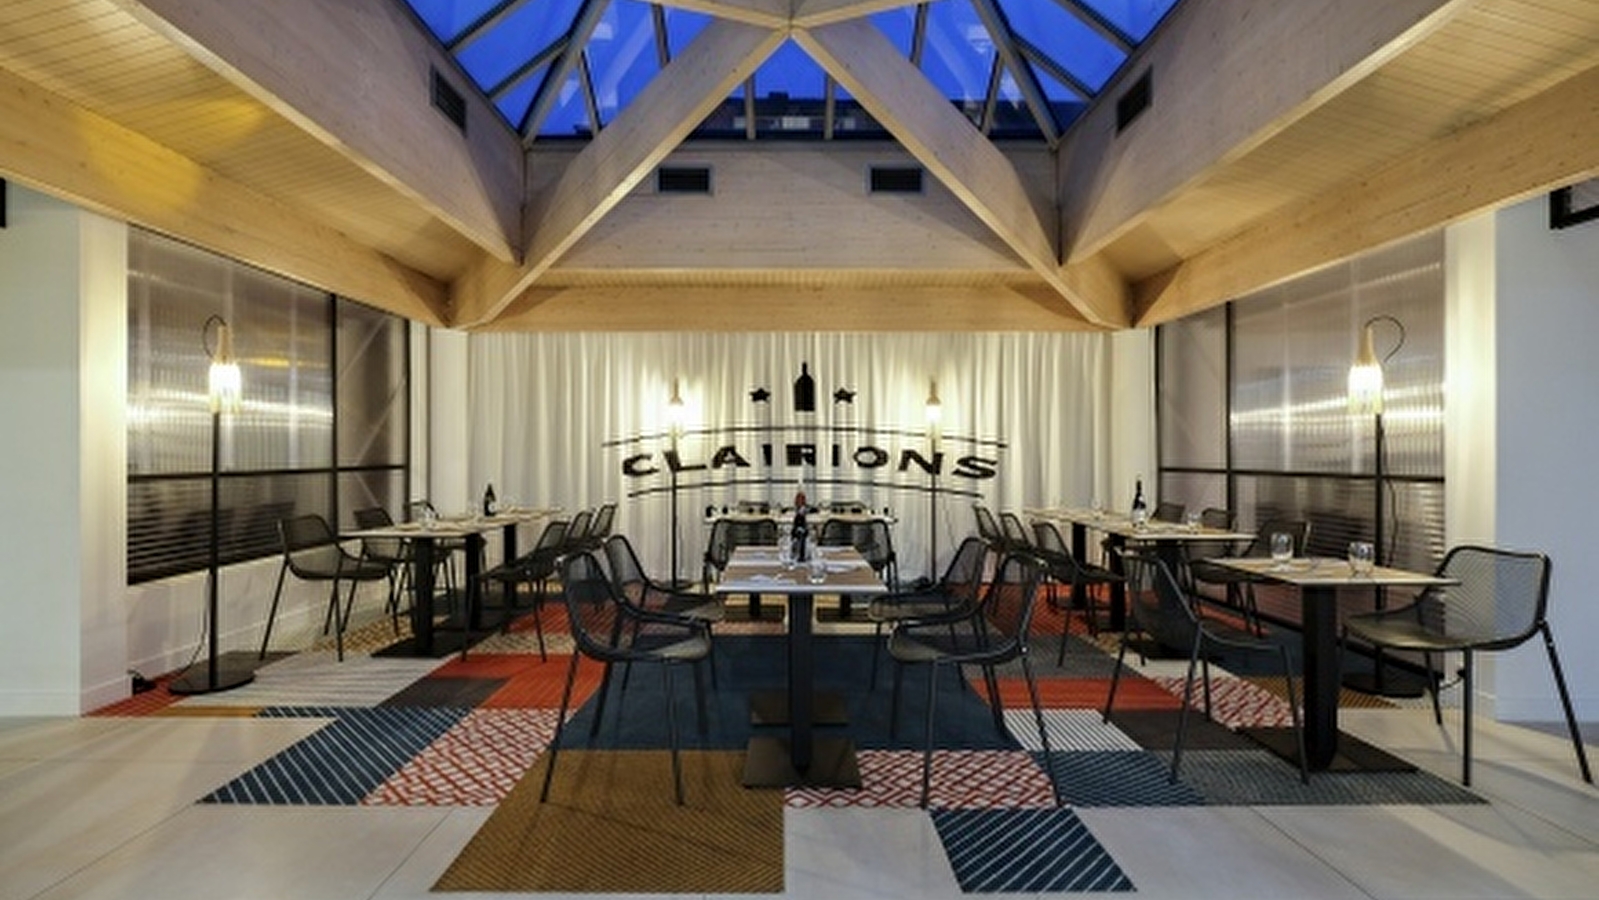 Clairions Club Original